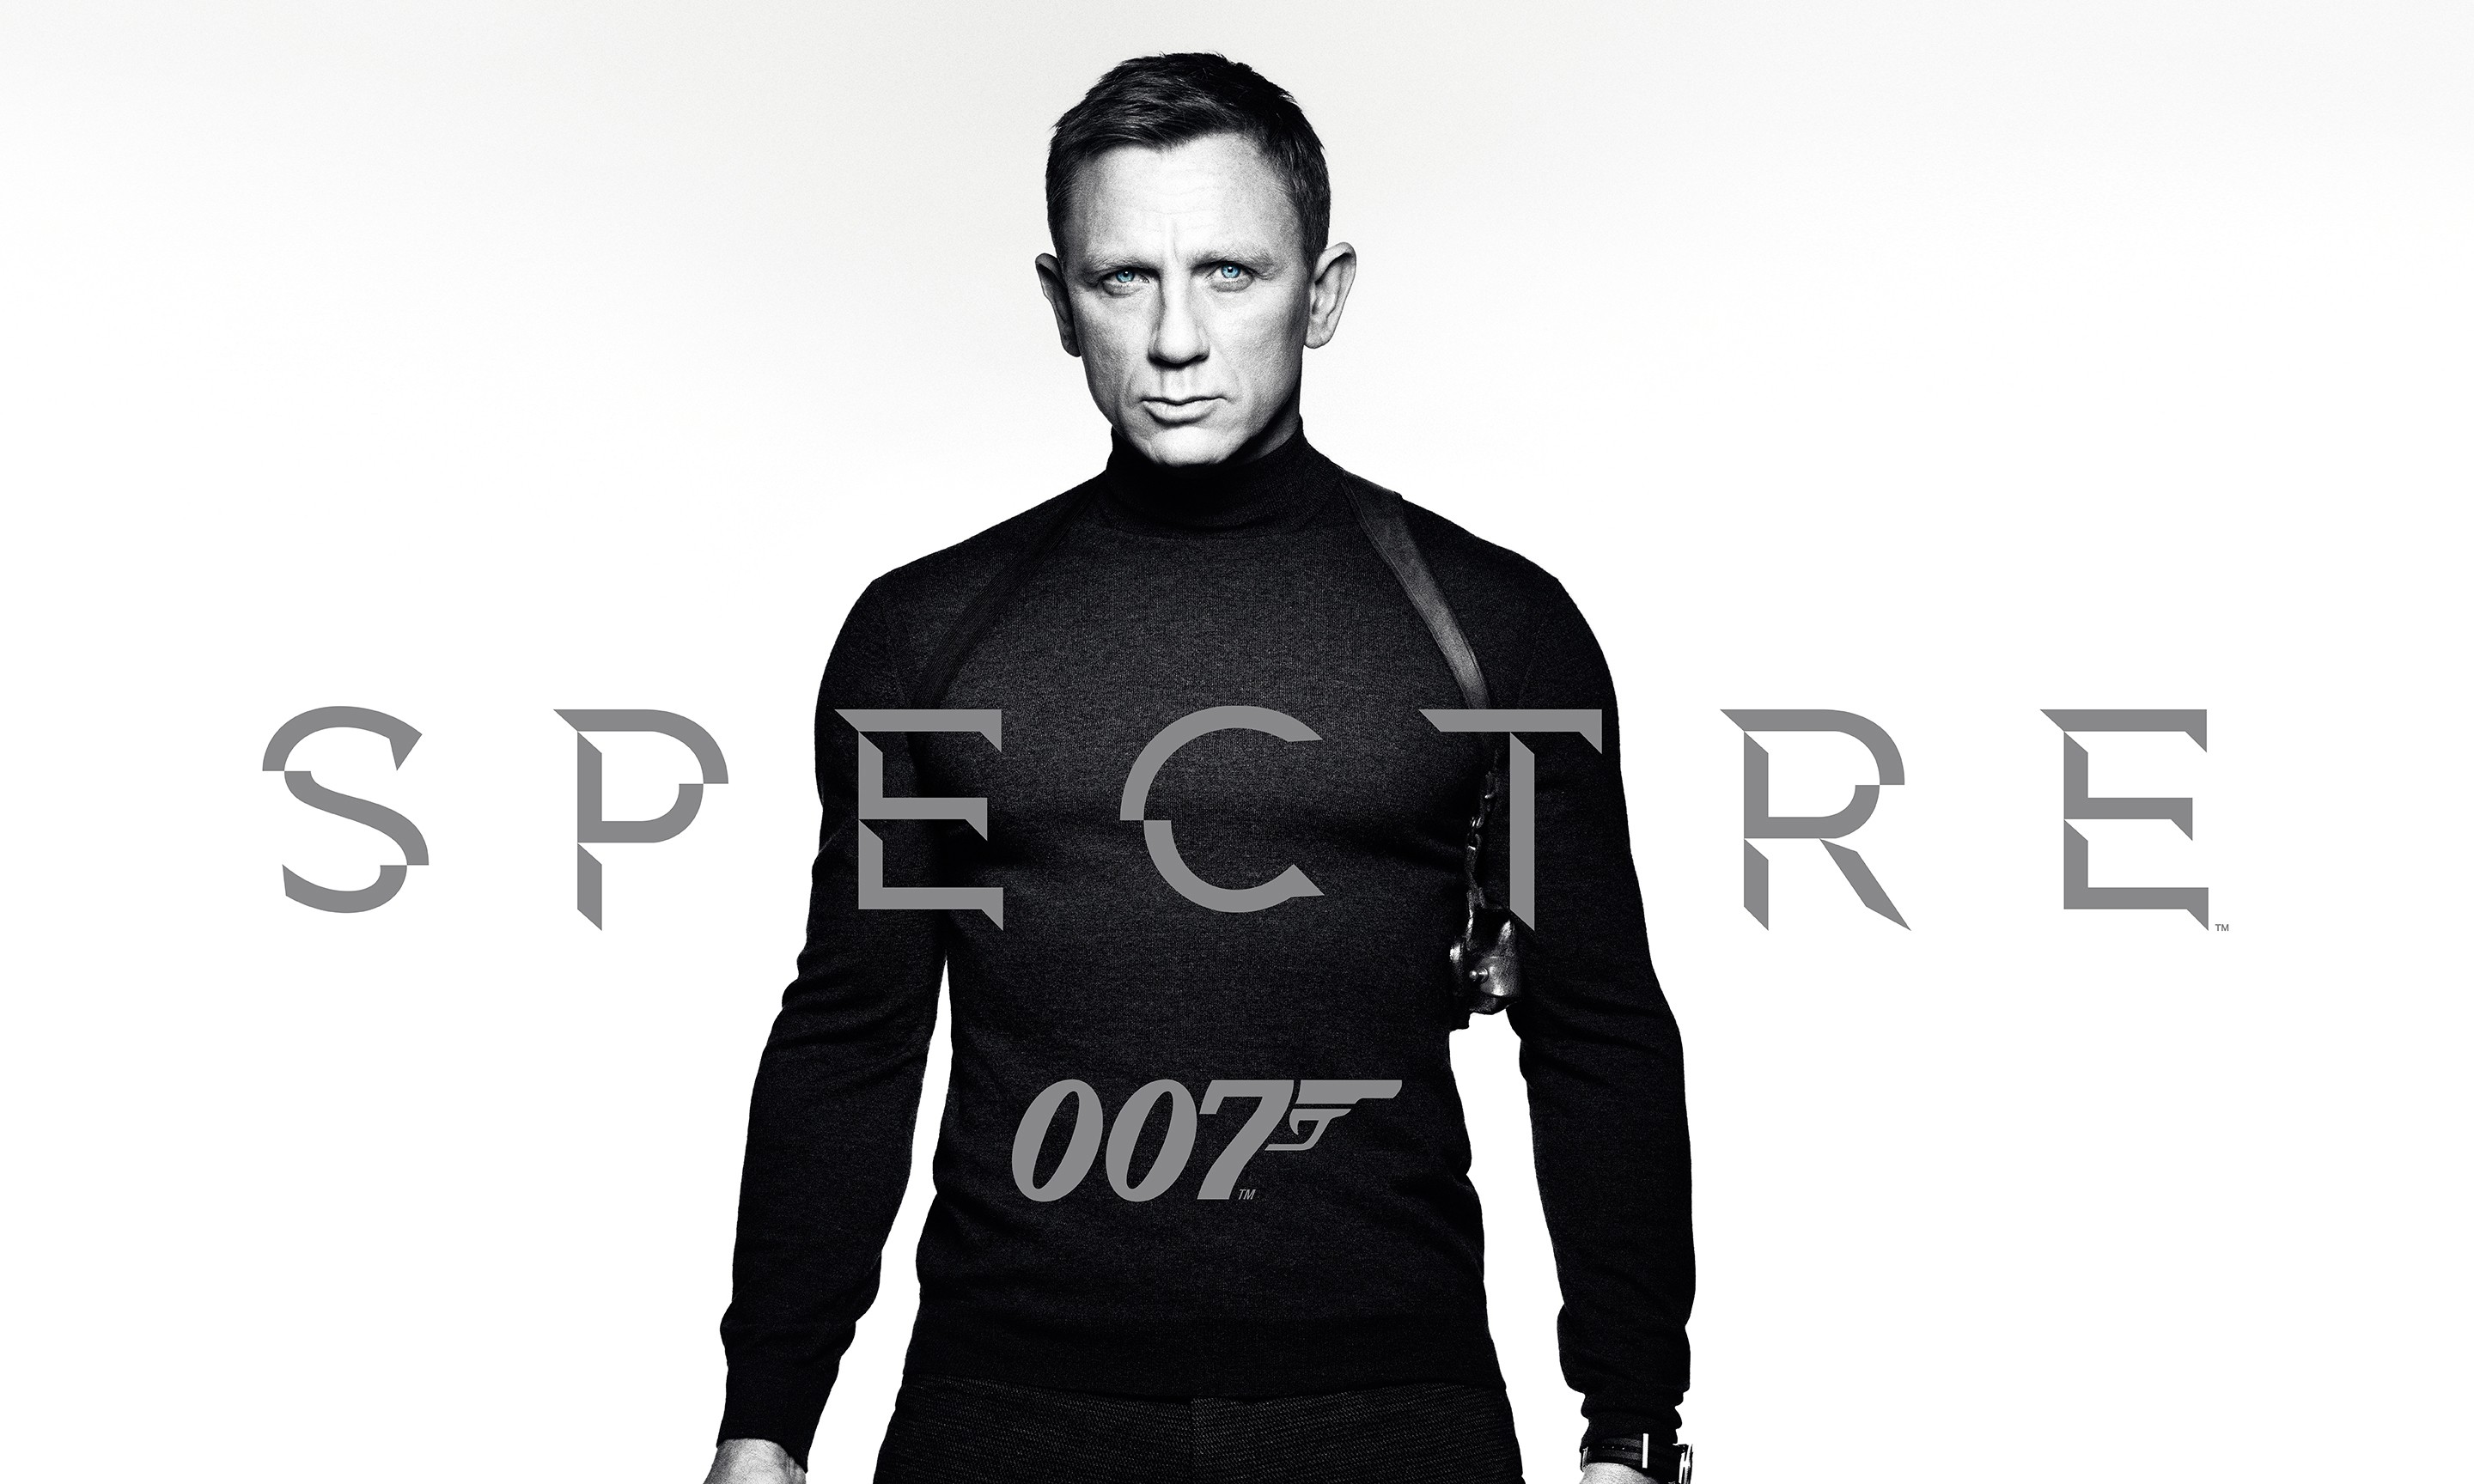 007 的选择,《spectre》片中 james bond 所穿服饰皆出自 tom ford